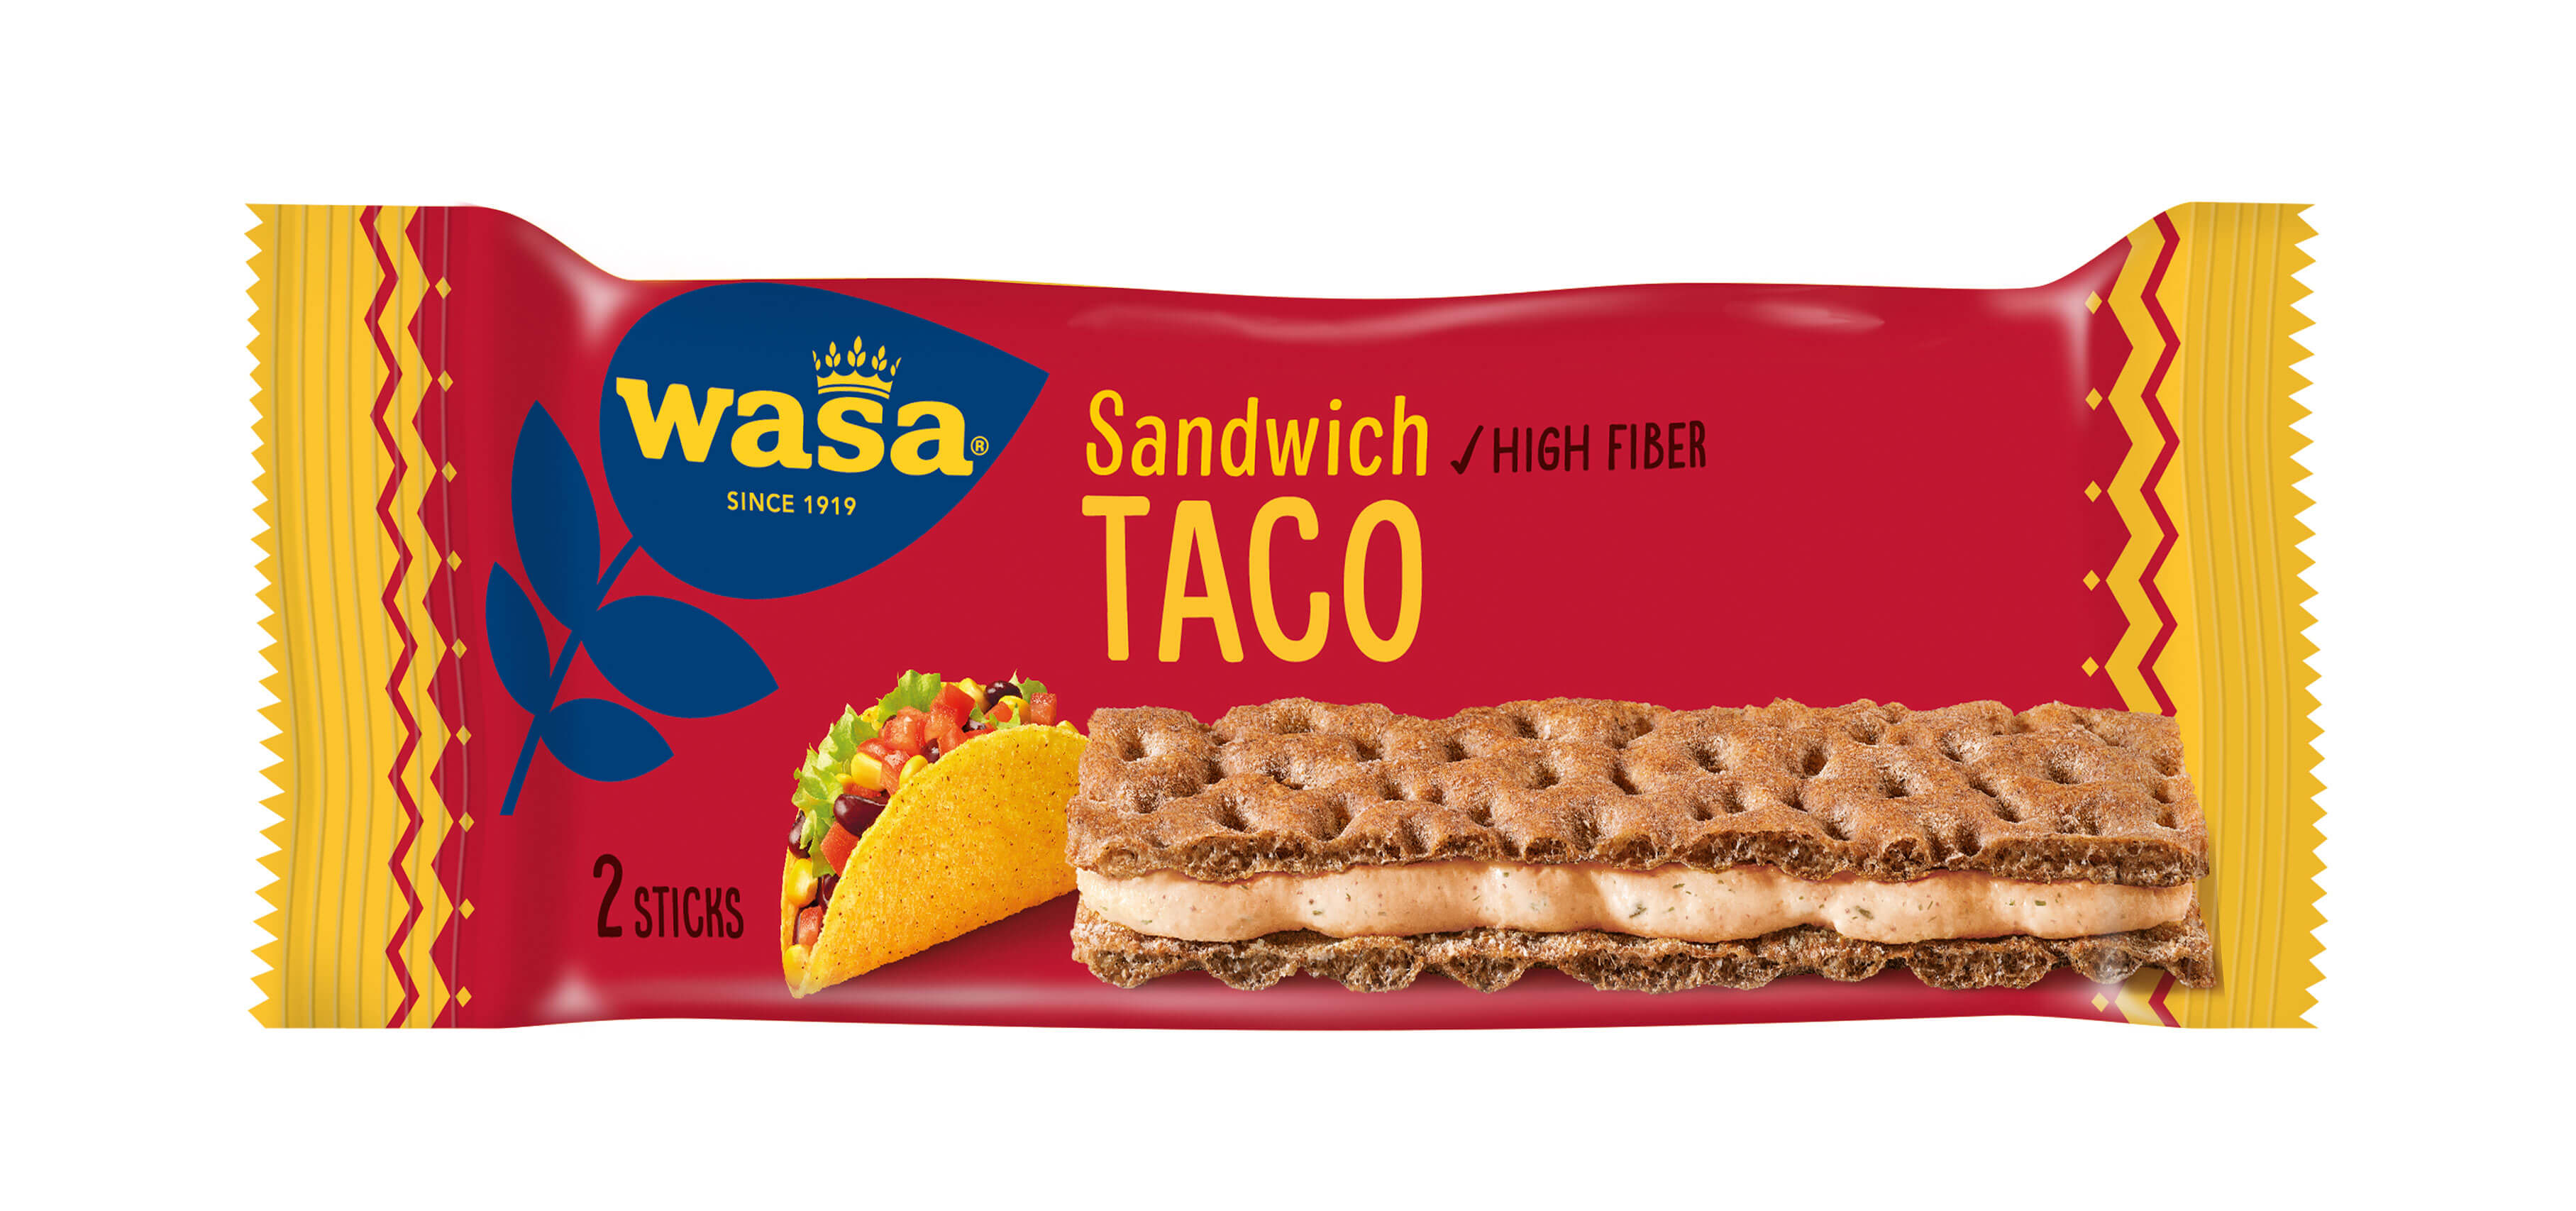 Wasa Sandwich Taco - Upptäck det perfekta mellanmålet, gott knäckebröd med krämig ostfyllning. Utmärkt som ett lätt mellanmål på språng och som tips på mellanmål till jobbet, efter skolan eller innan träning.